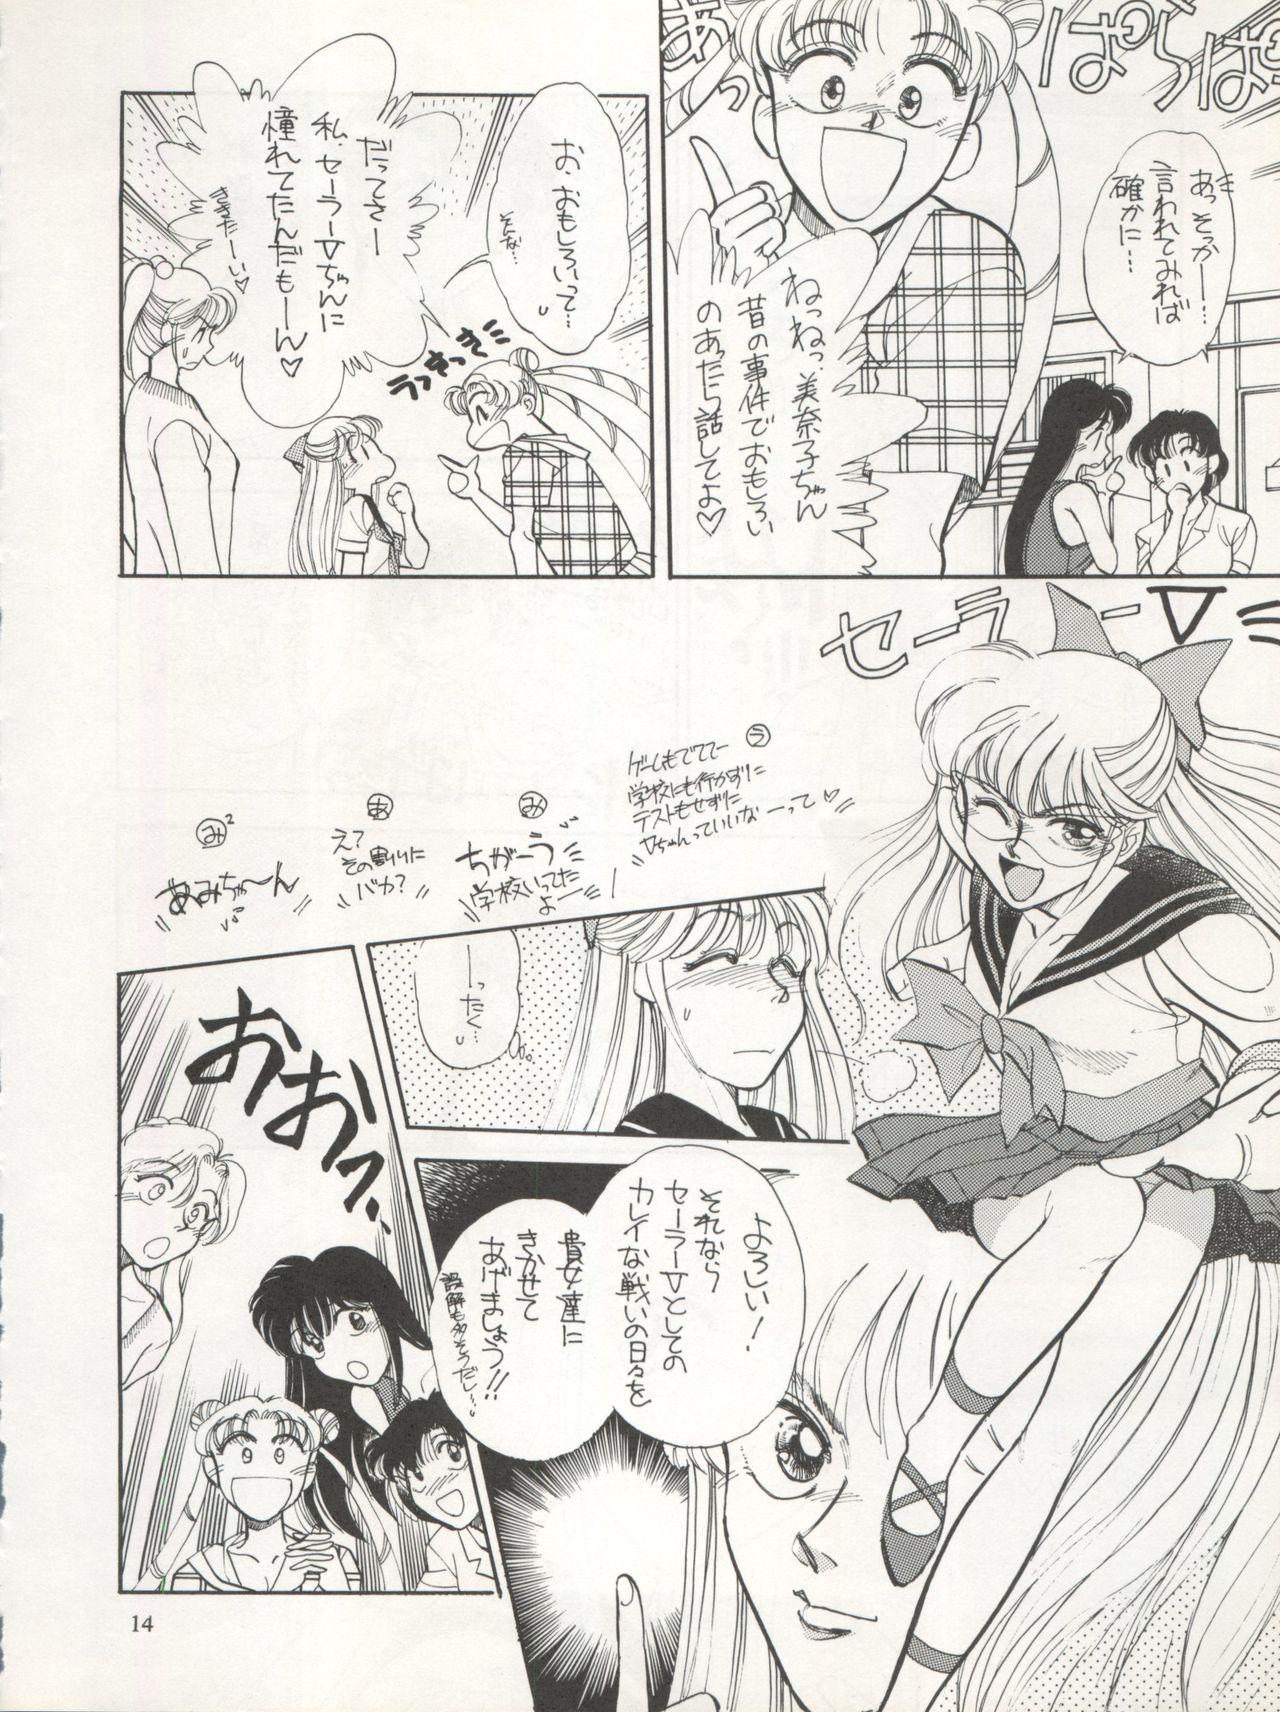 Teenfuns Sekai Seifuku Sailor Fuku 5 - Sailor moon Buceta - Page 12